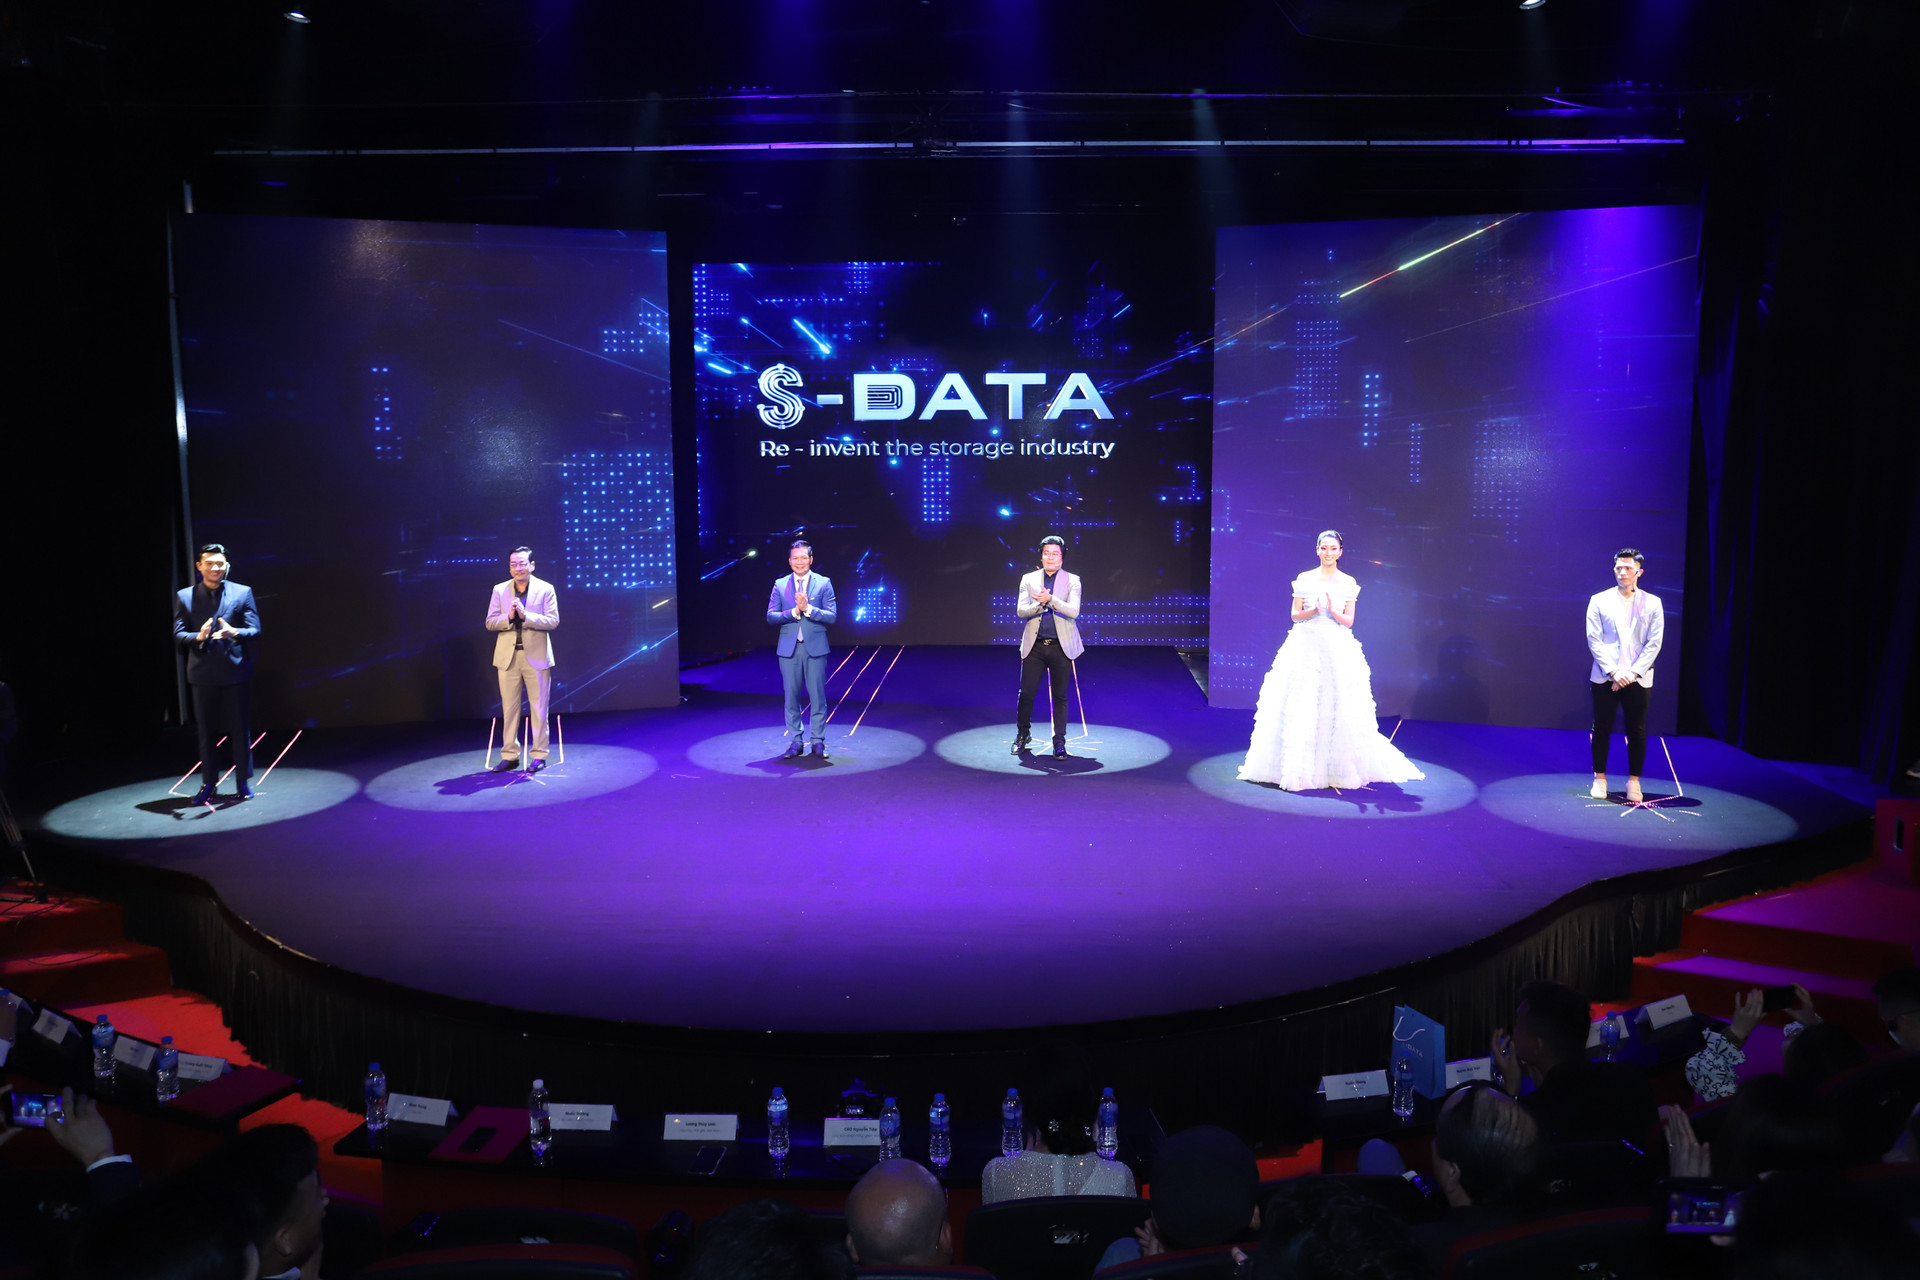 Ra mắt mạng xã hội du lịch Astra - Công nghệ lưu trữ dữ liệu S - Data